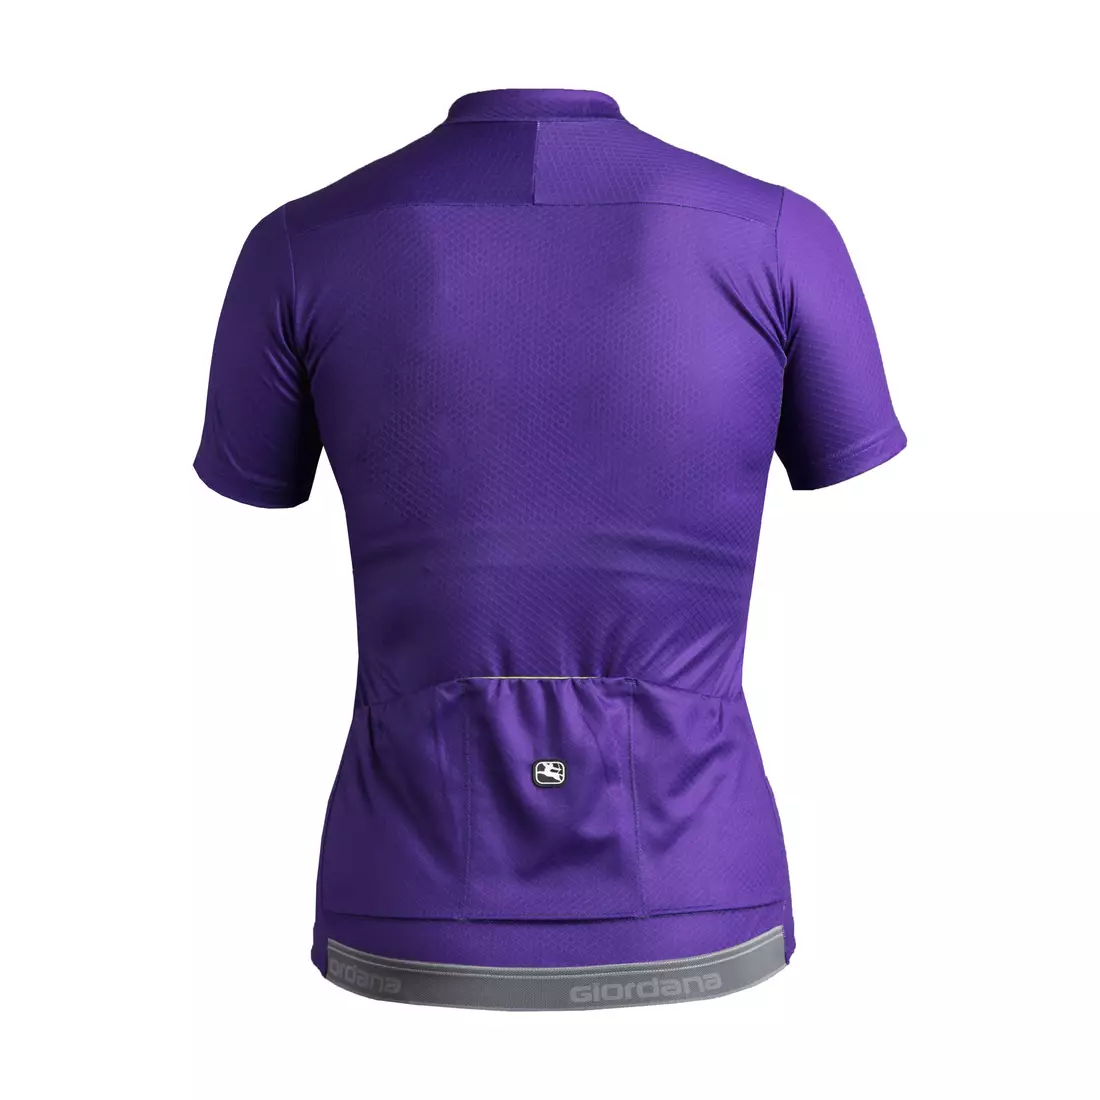 Dámský cyklistický dres GIORDANA FUSION, fialový